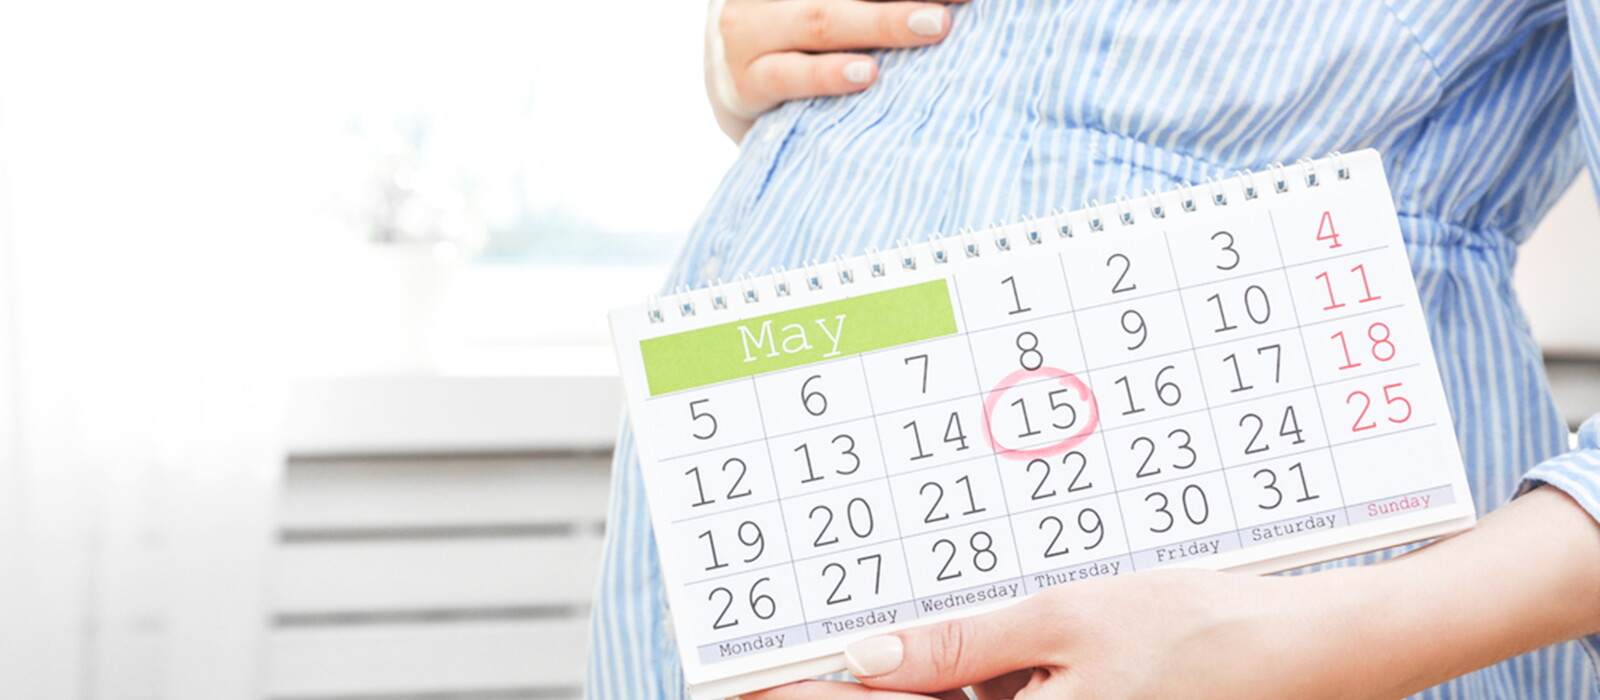 懷孕週數怎麼算